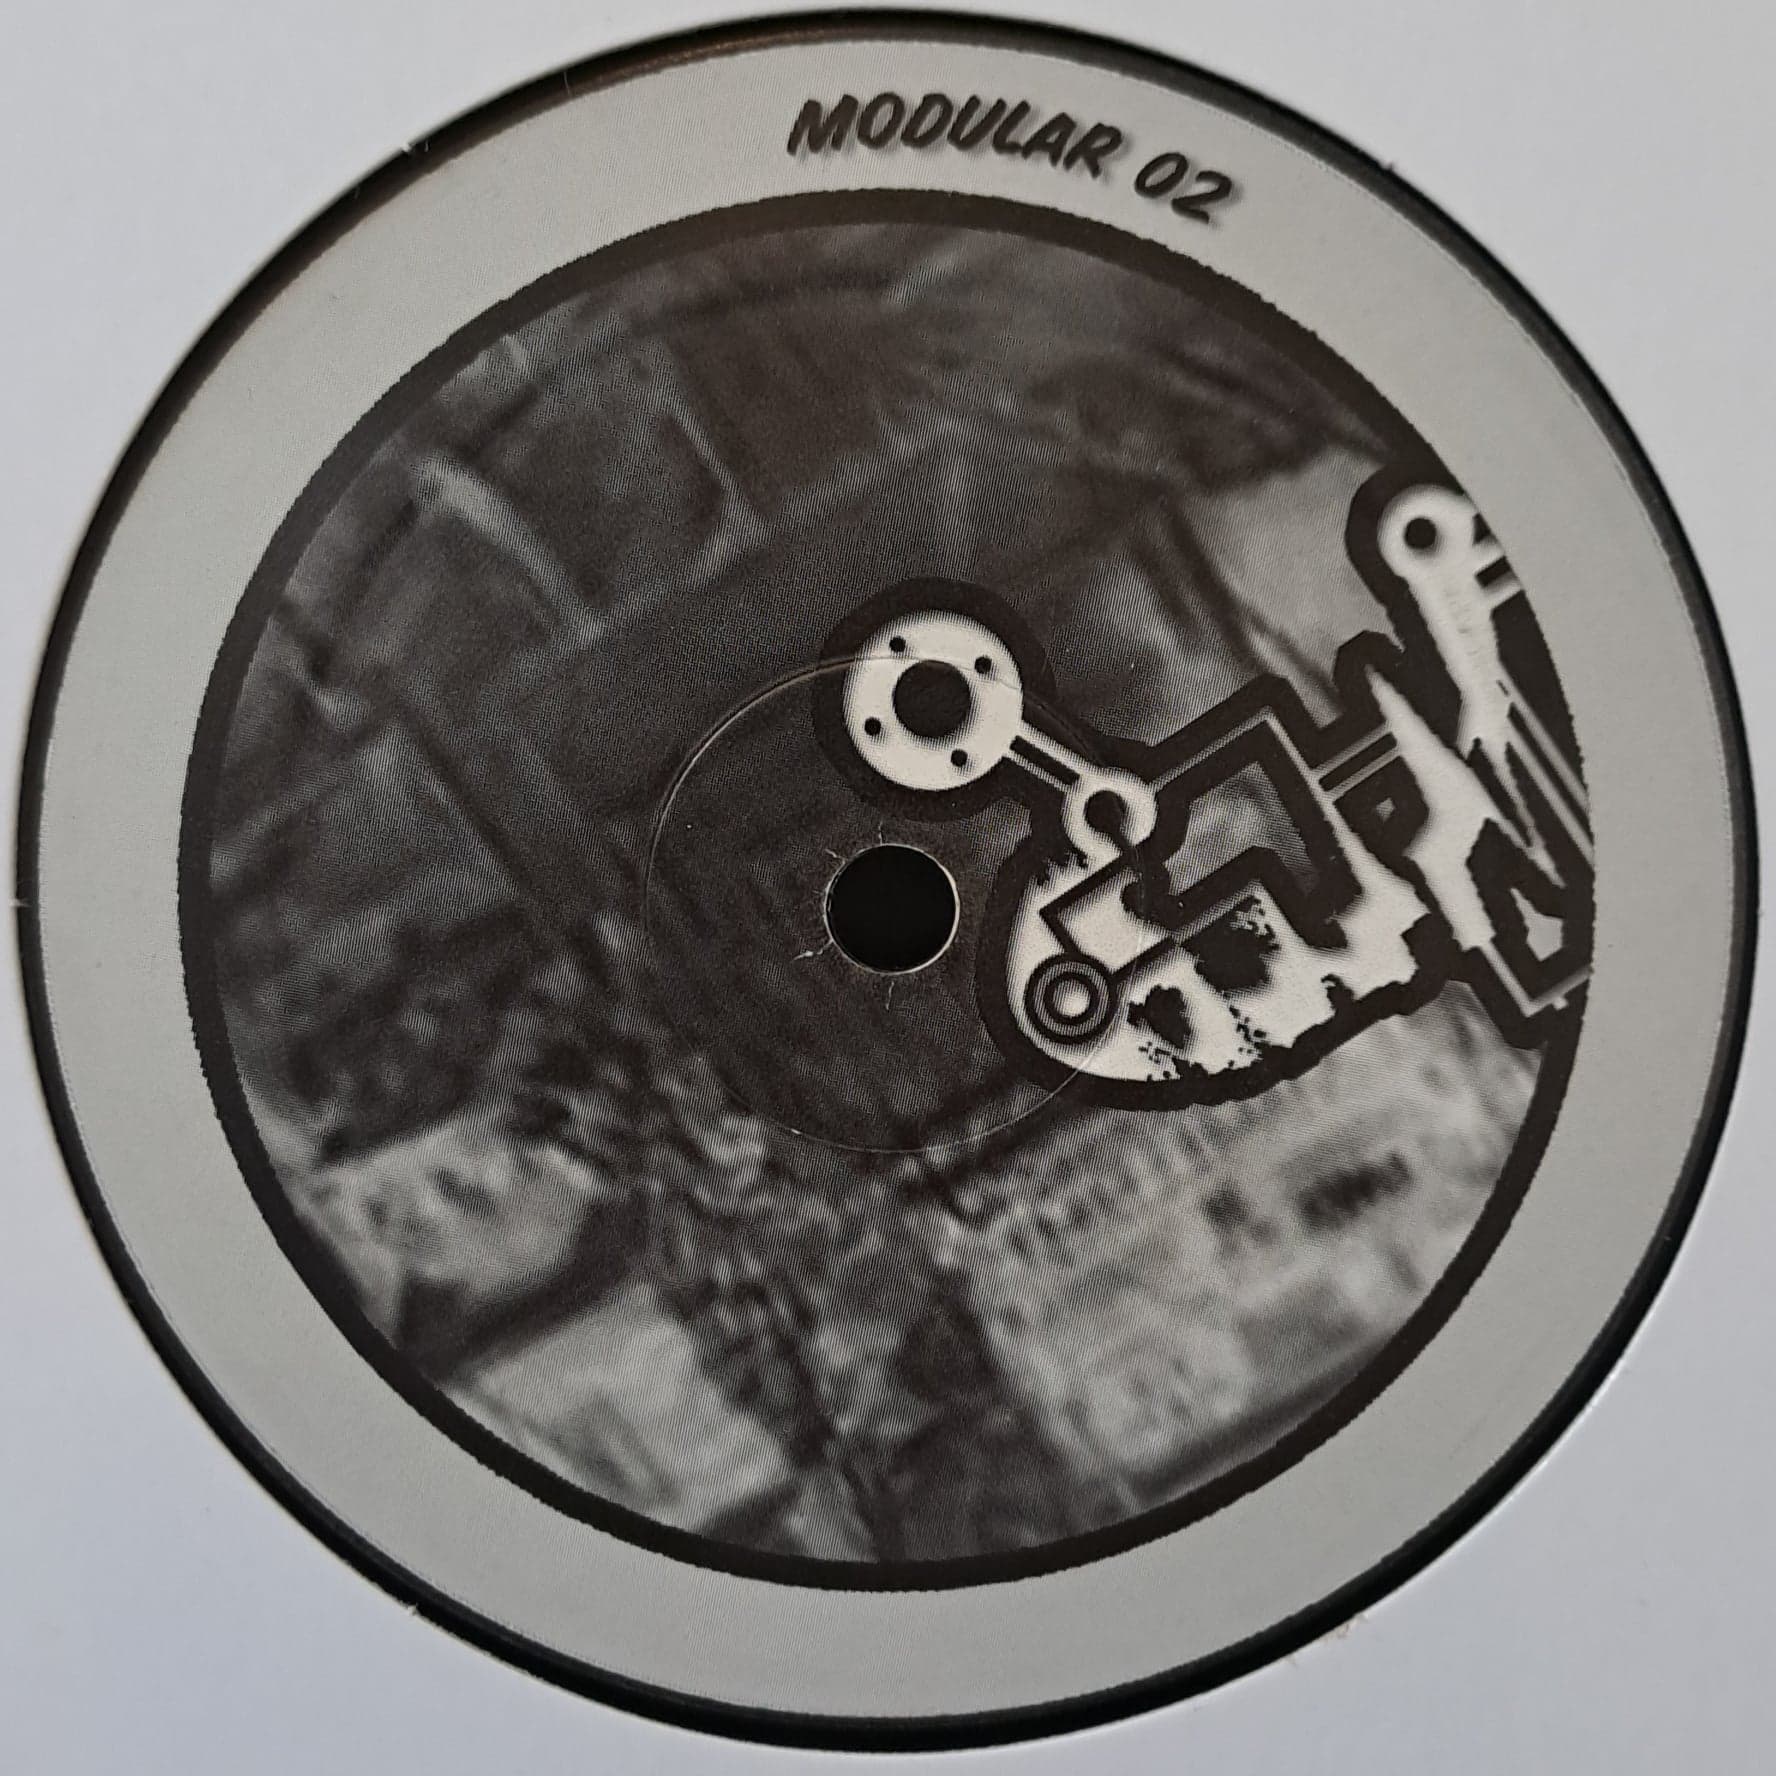 Modular 02 - vinyle freetekno